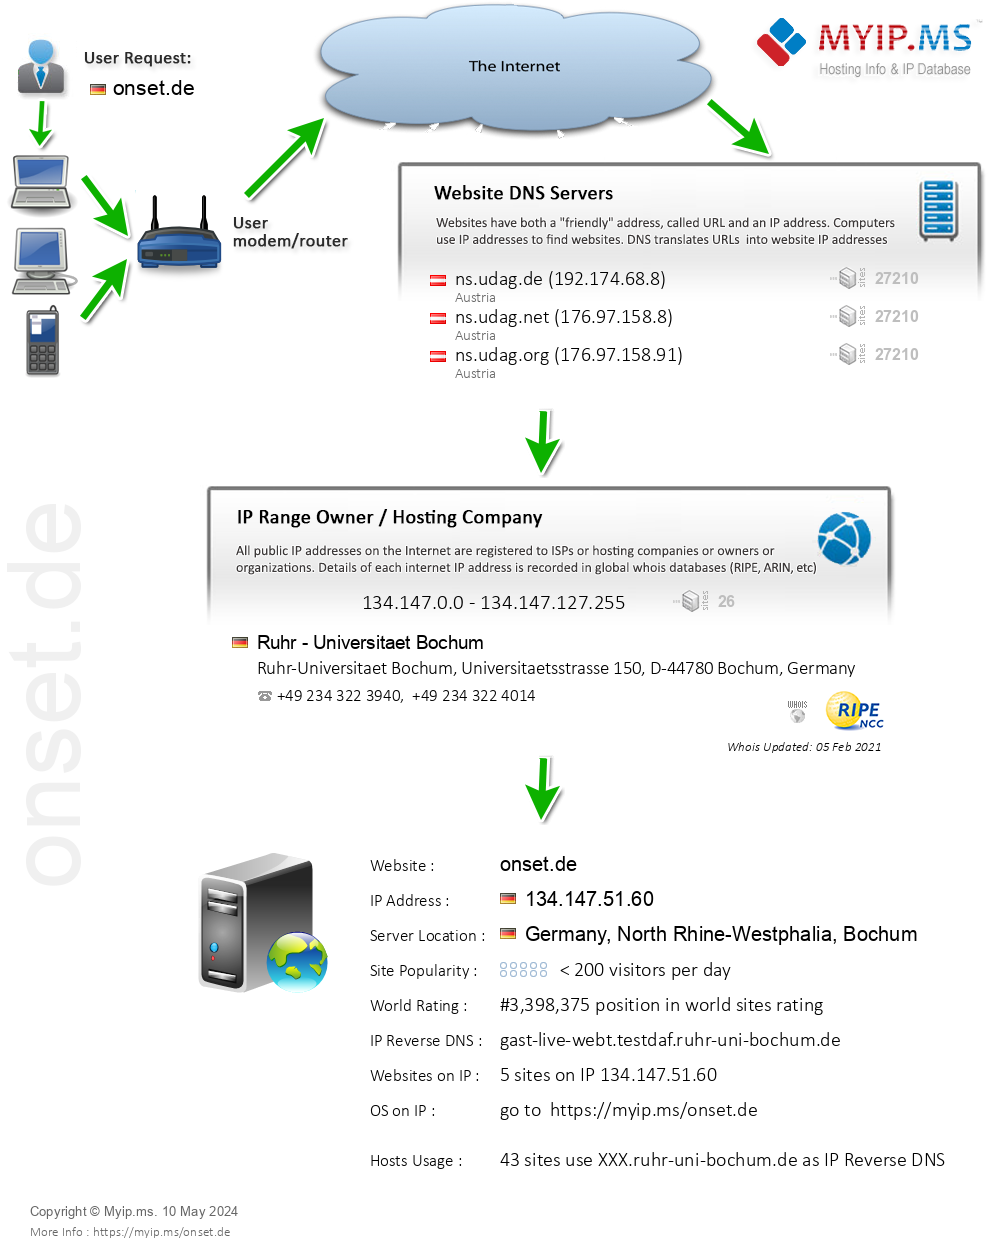 Onset.de - Website Hosting Visual IP Diagram